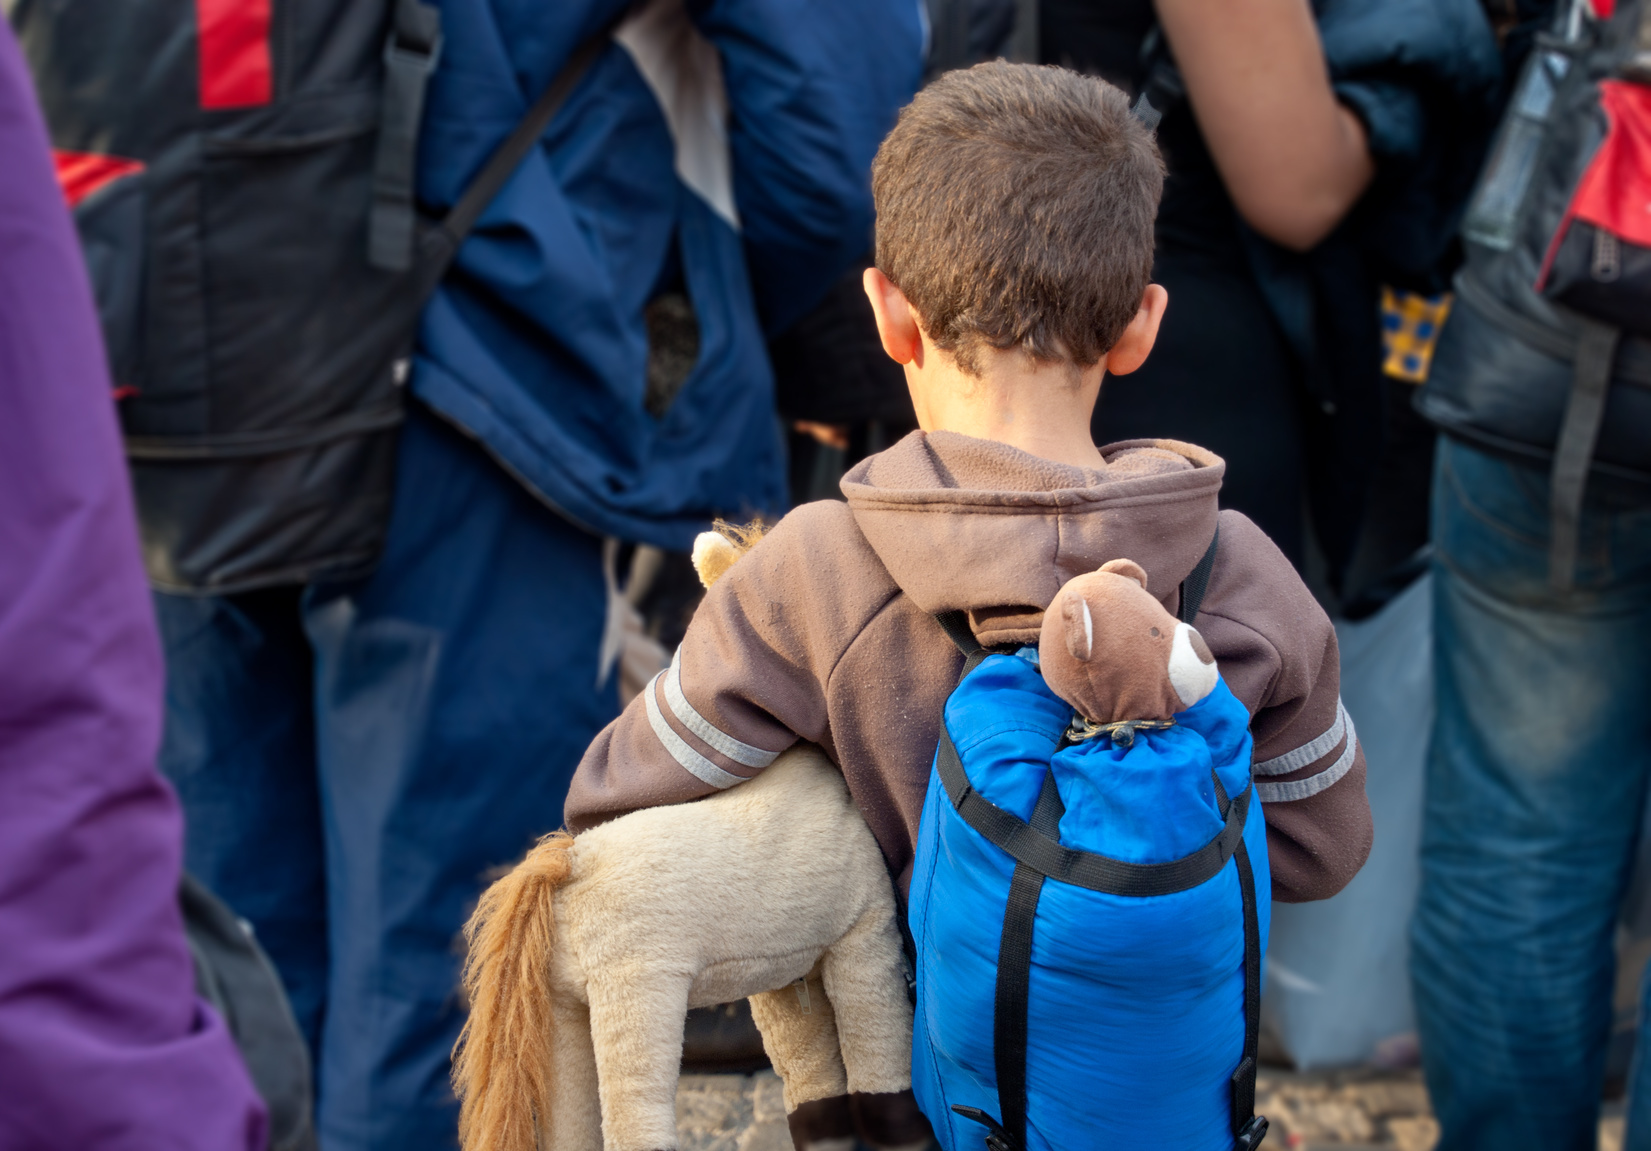 Immer mehr unbegleitete Flüchtlings-Kinder kommen nach Deutschland